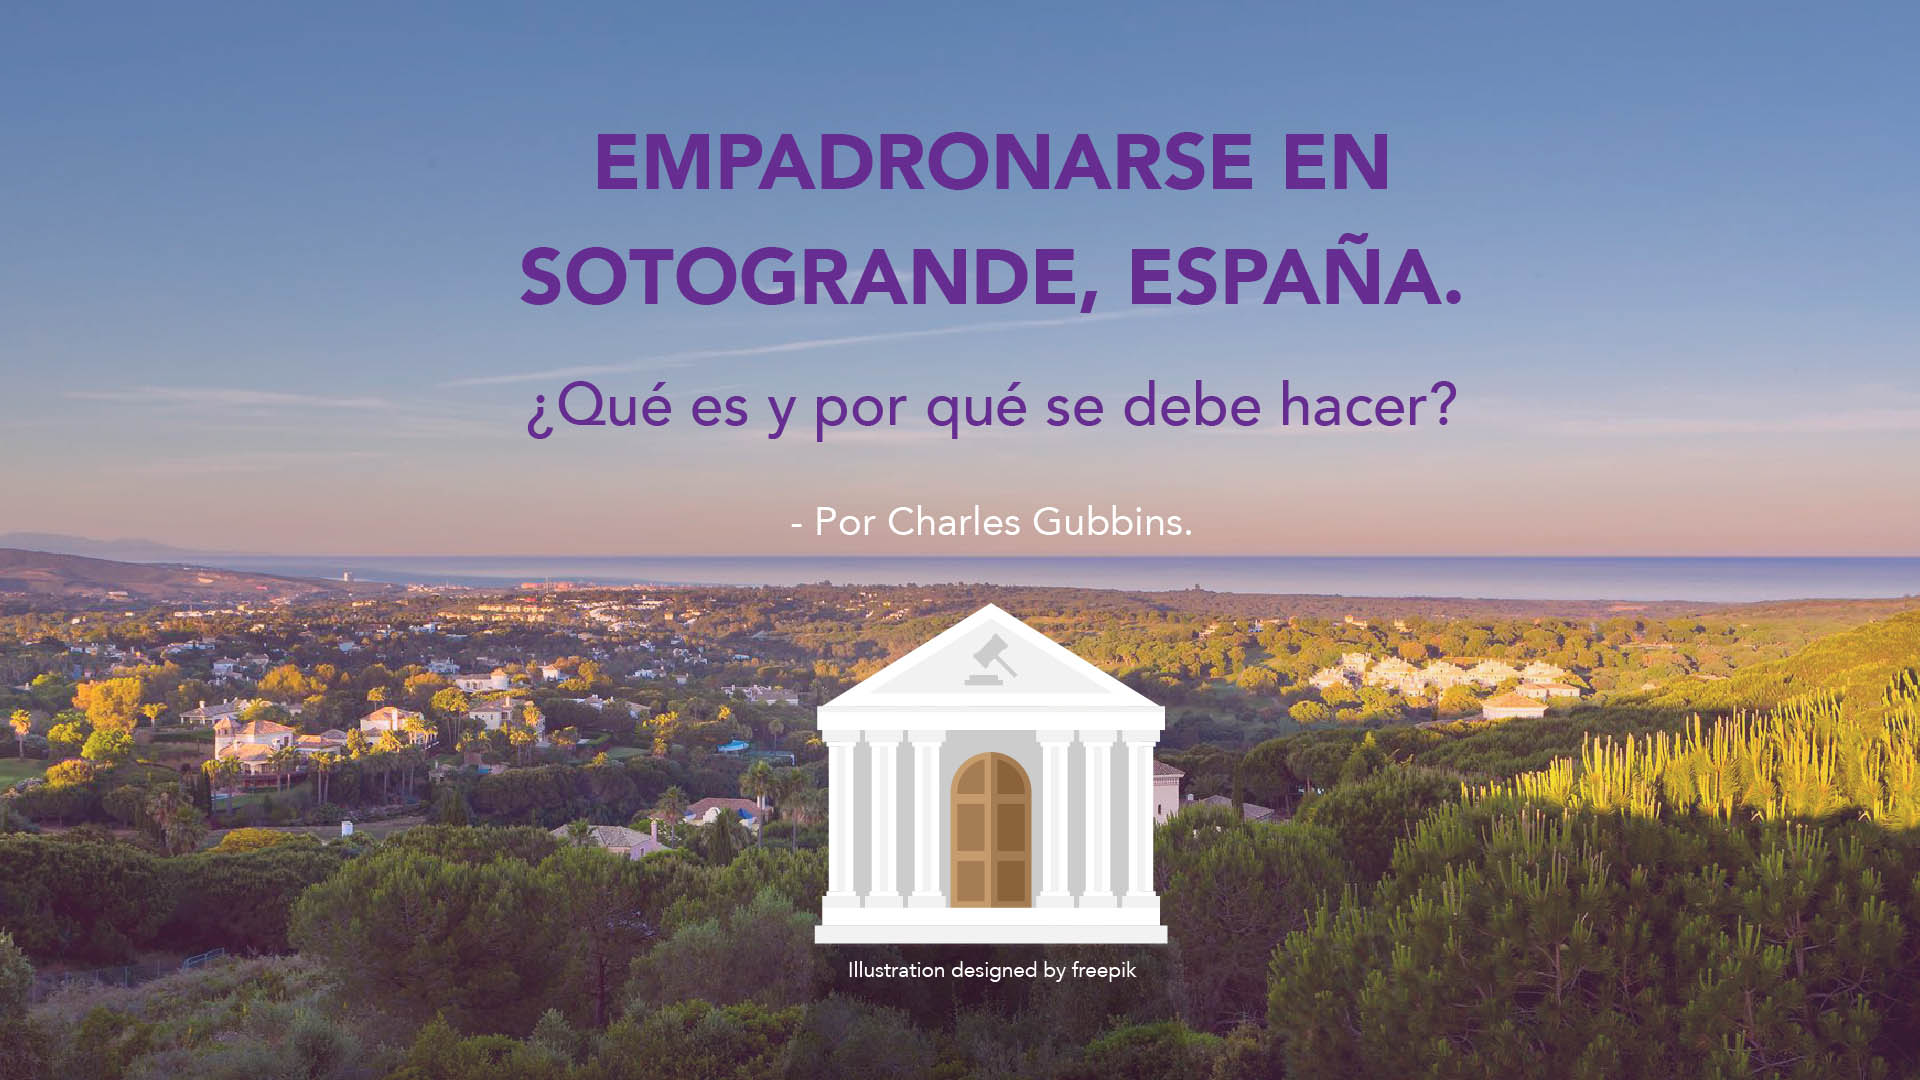 Empadronamiento en Sotogrande, España. ¿Qué es y por qué hacerlo?